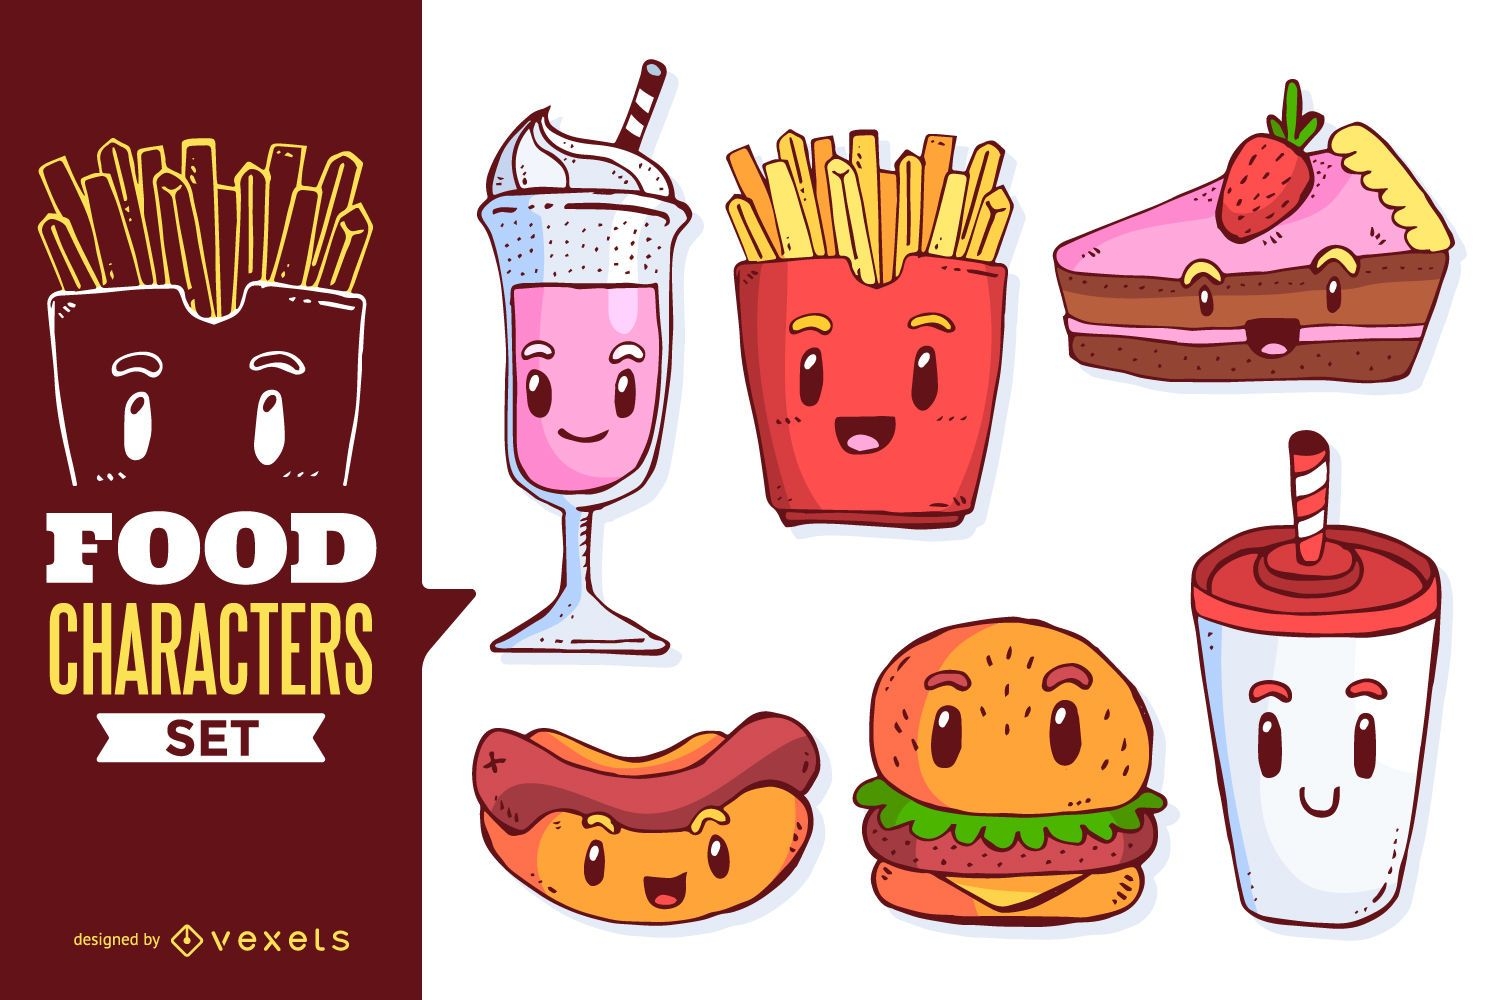 Food cartoons illustration set